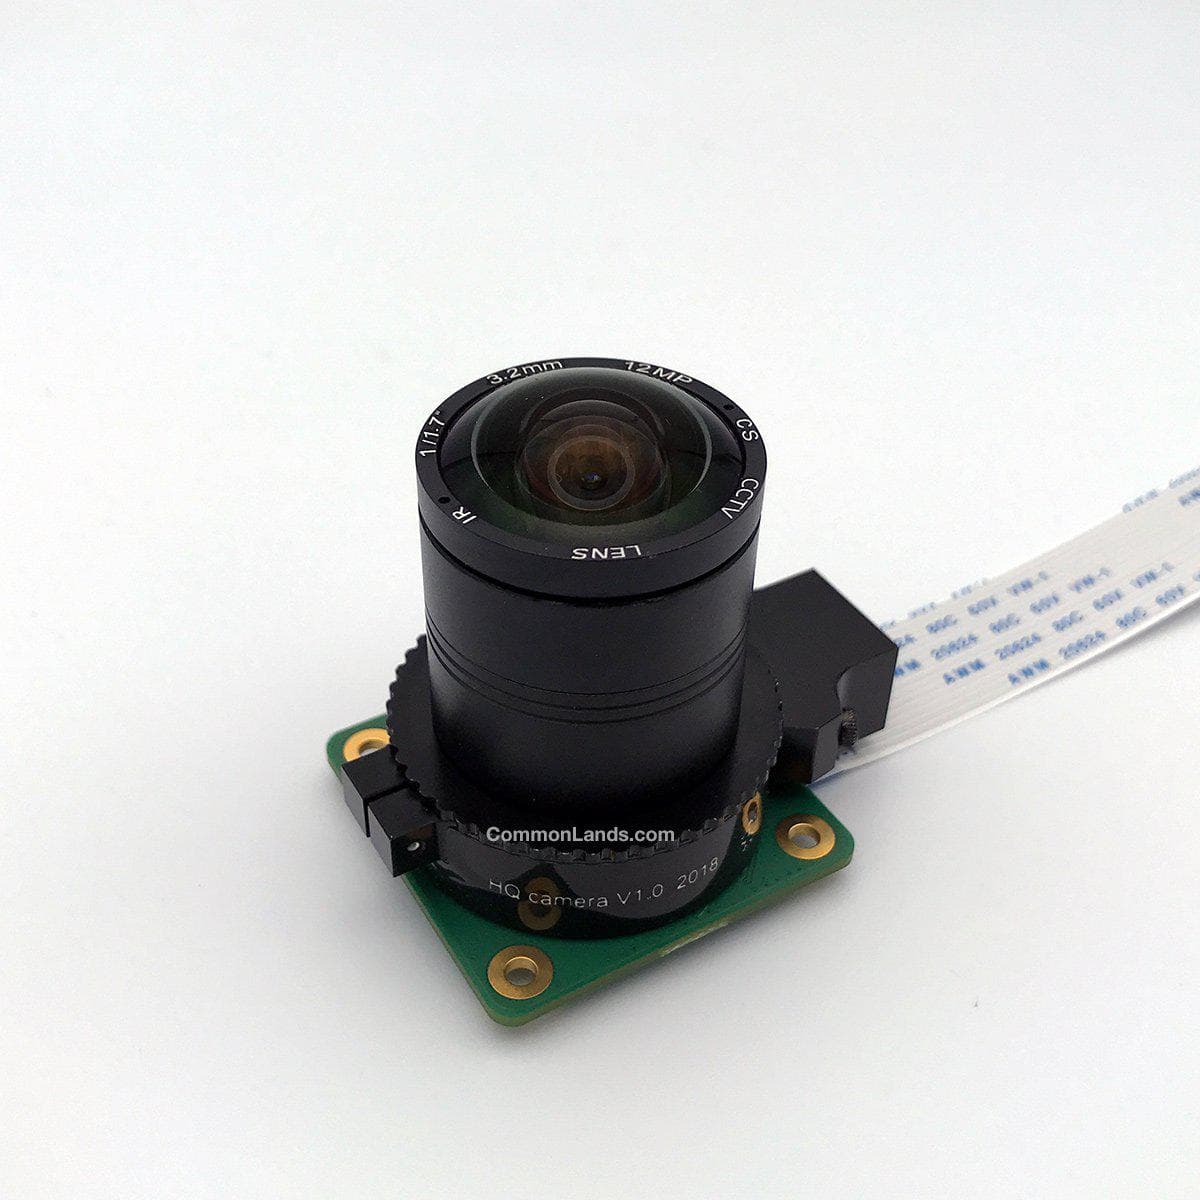 L'objectif CommonLands CIL03.2-F1.8-CSNOIR 3.2mm EFL est photographié avec la caméra HQ Raspberry Pi.